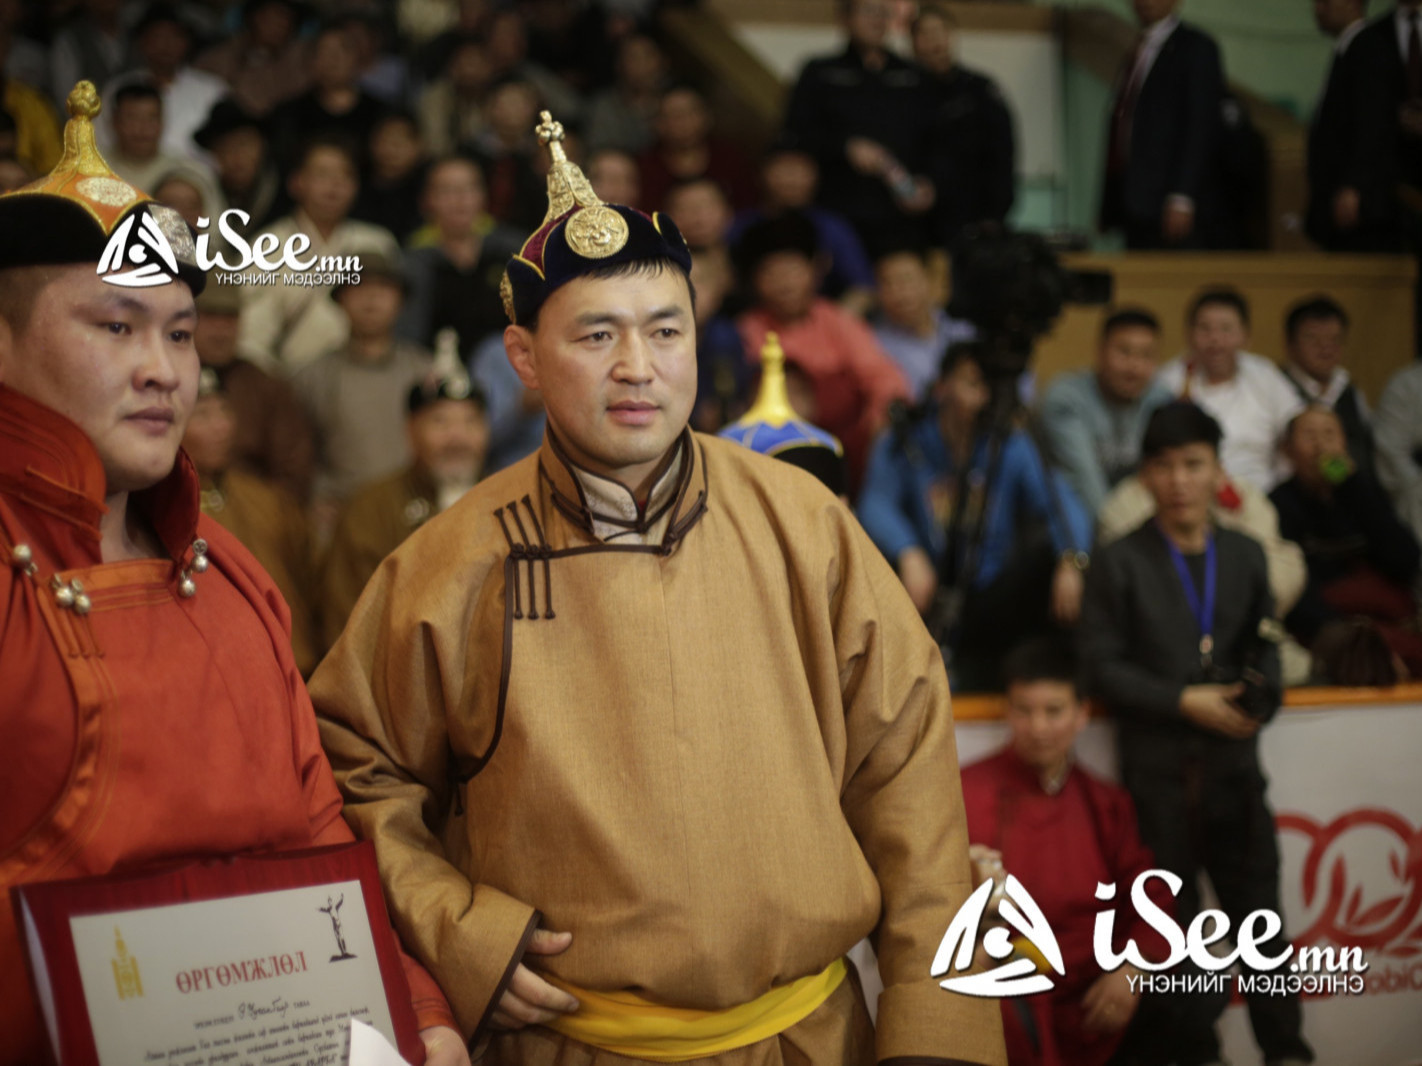 “Зодог тайлсан” А.Сүхбат аварга Төв аймгийн 100 жилийн ойн баяр наадамд зодоглоно